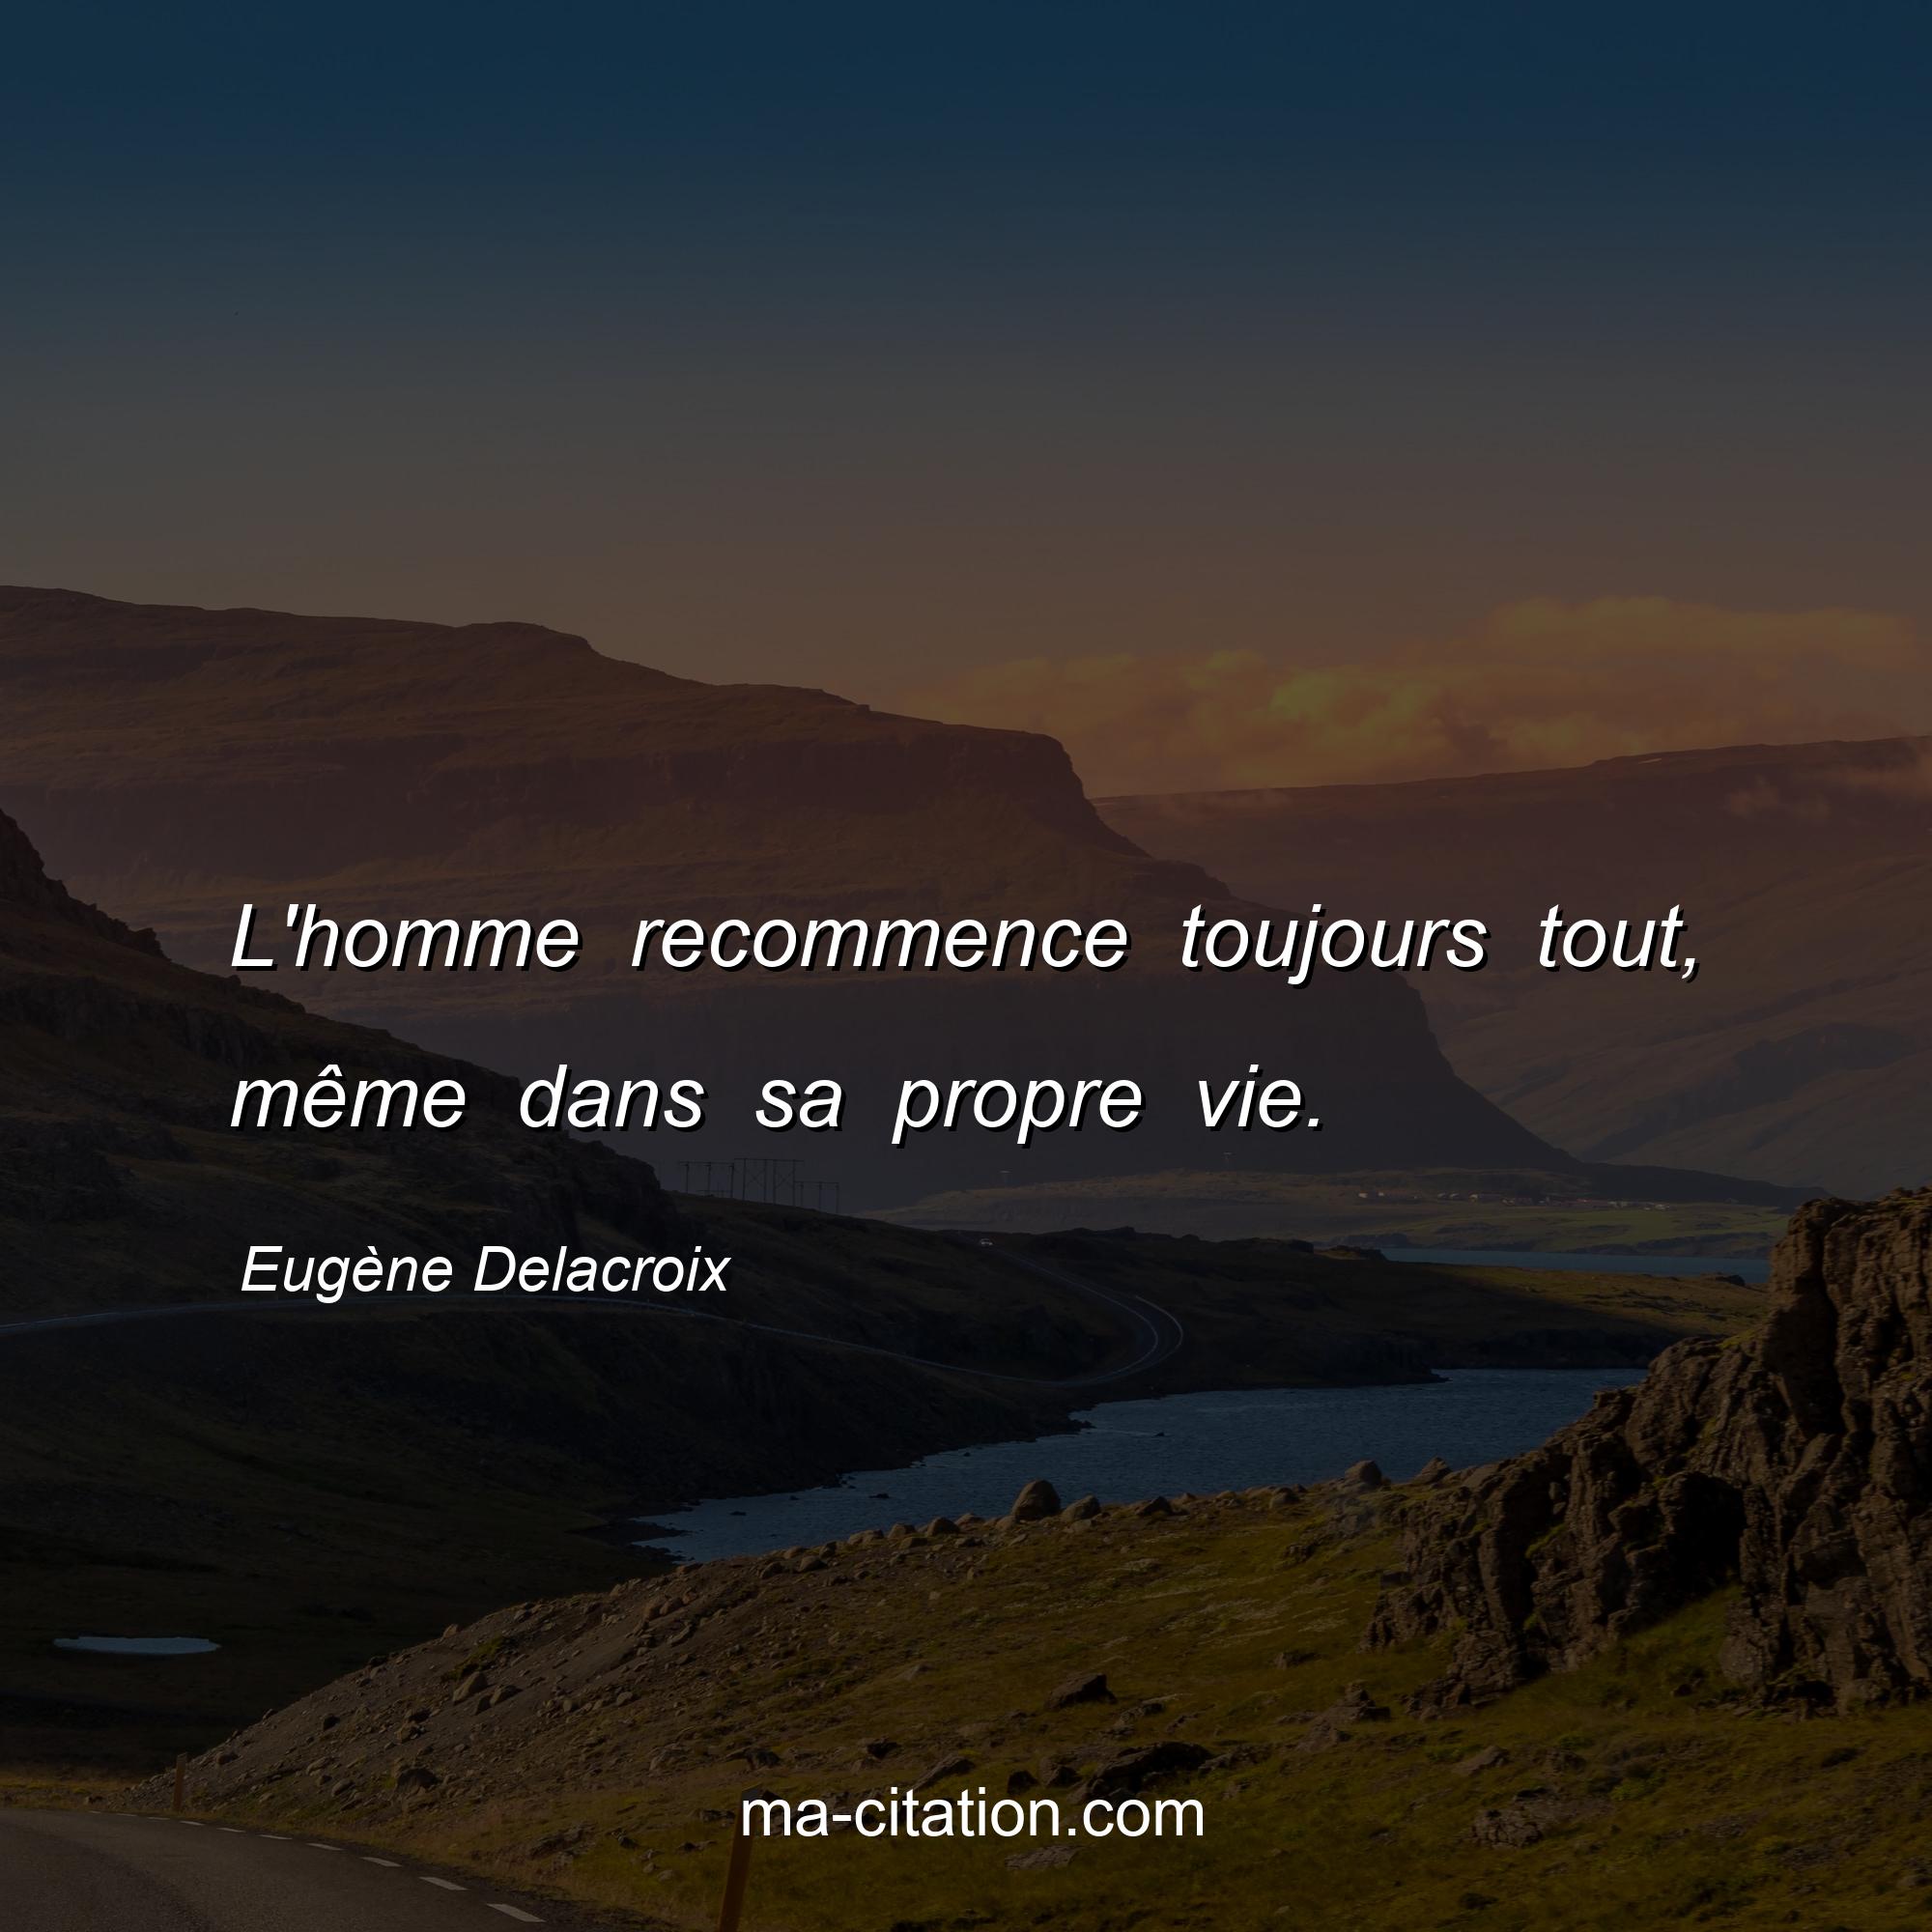 Eugène Delacroix : L'homme recommence toujours tout, même dans sa propre vie.